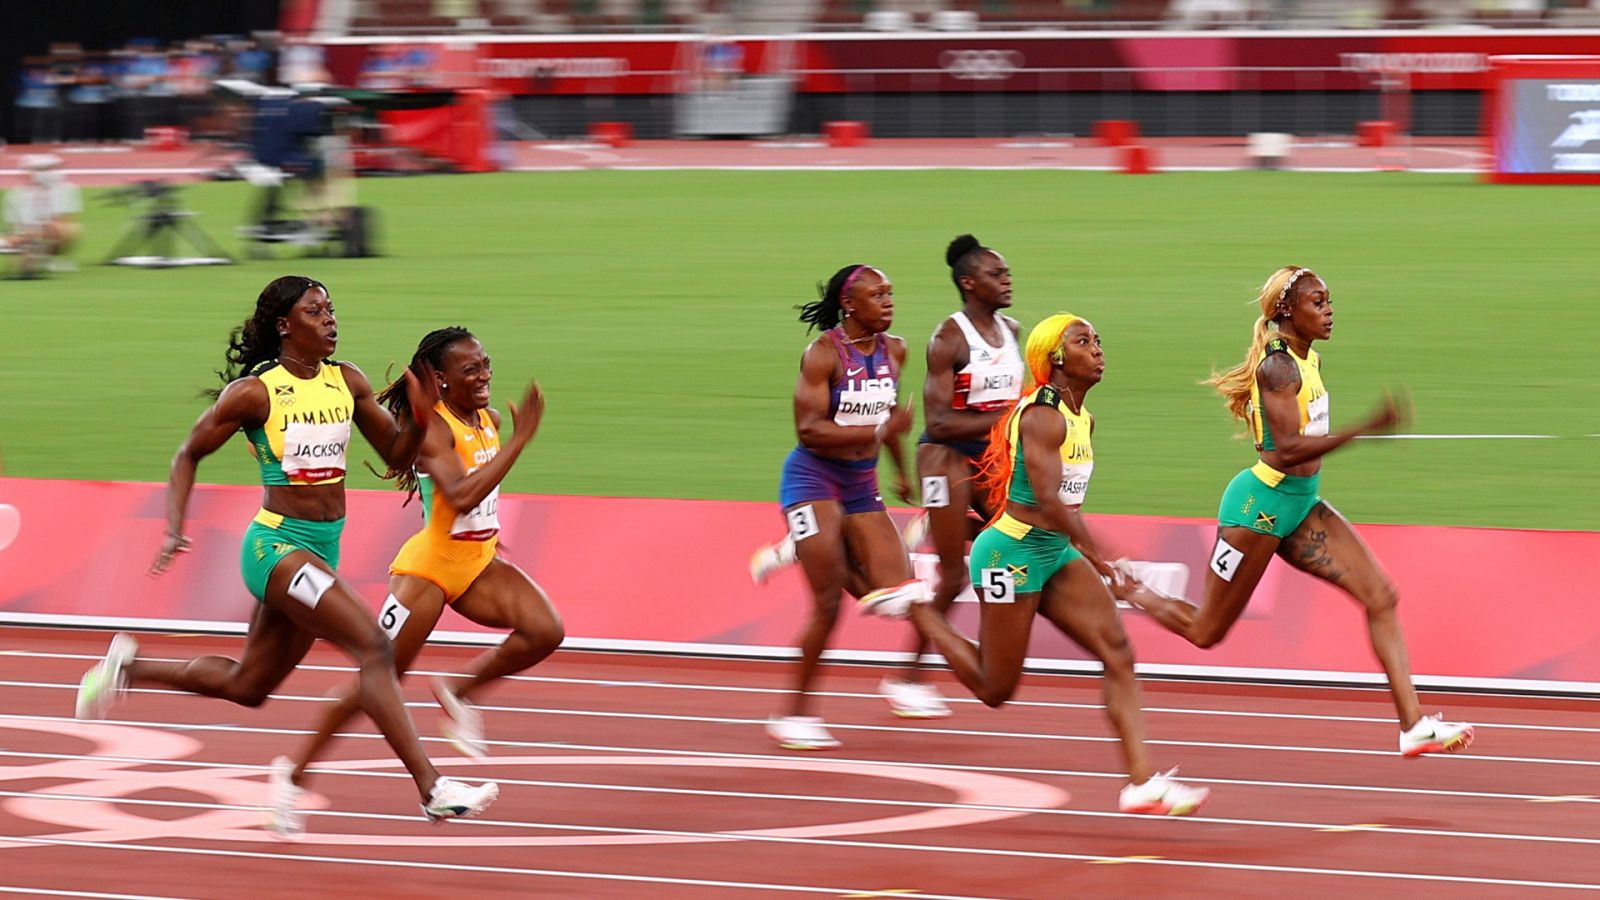 Atletismo: Final femenina 100 metros lisos - Ver ahora